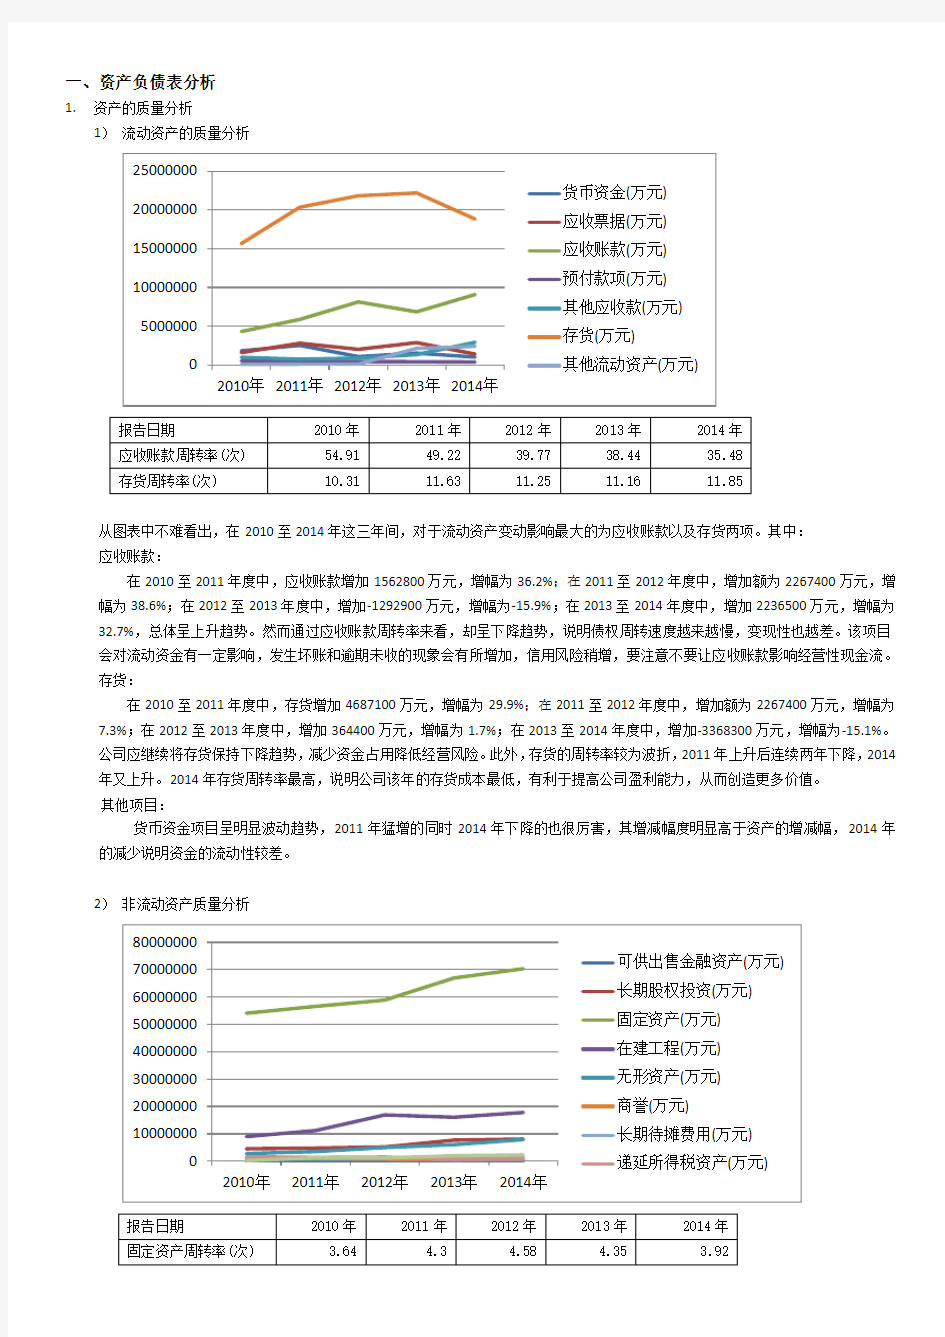 中国石化财务报表分析 上市公司财务报表分析